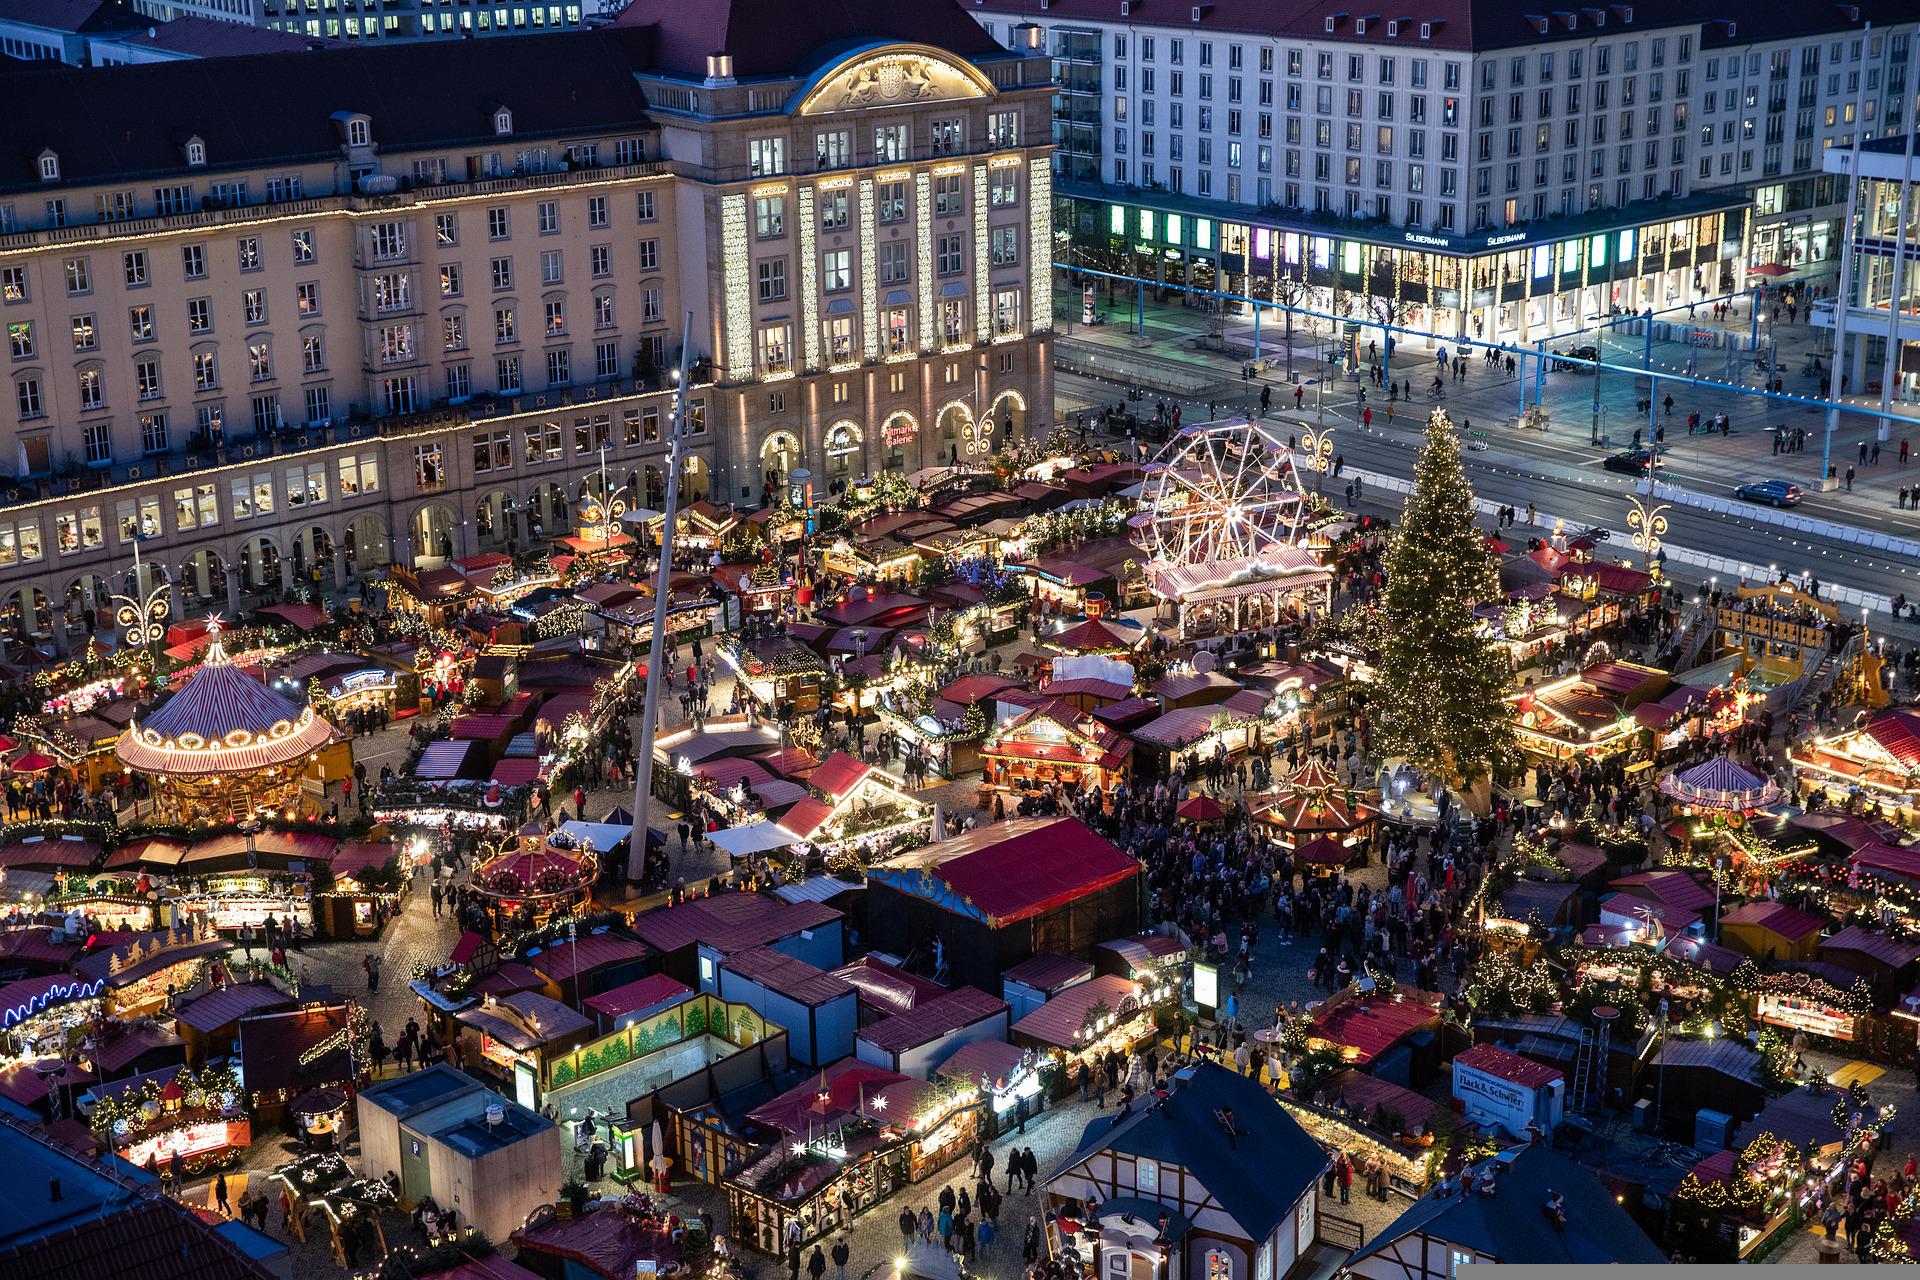 Коледни базари в Прага-Дрезден-Лайпциг-30.11, със самолет от Варна